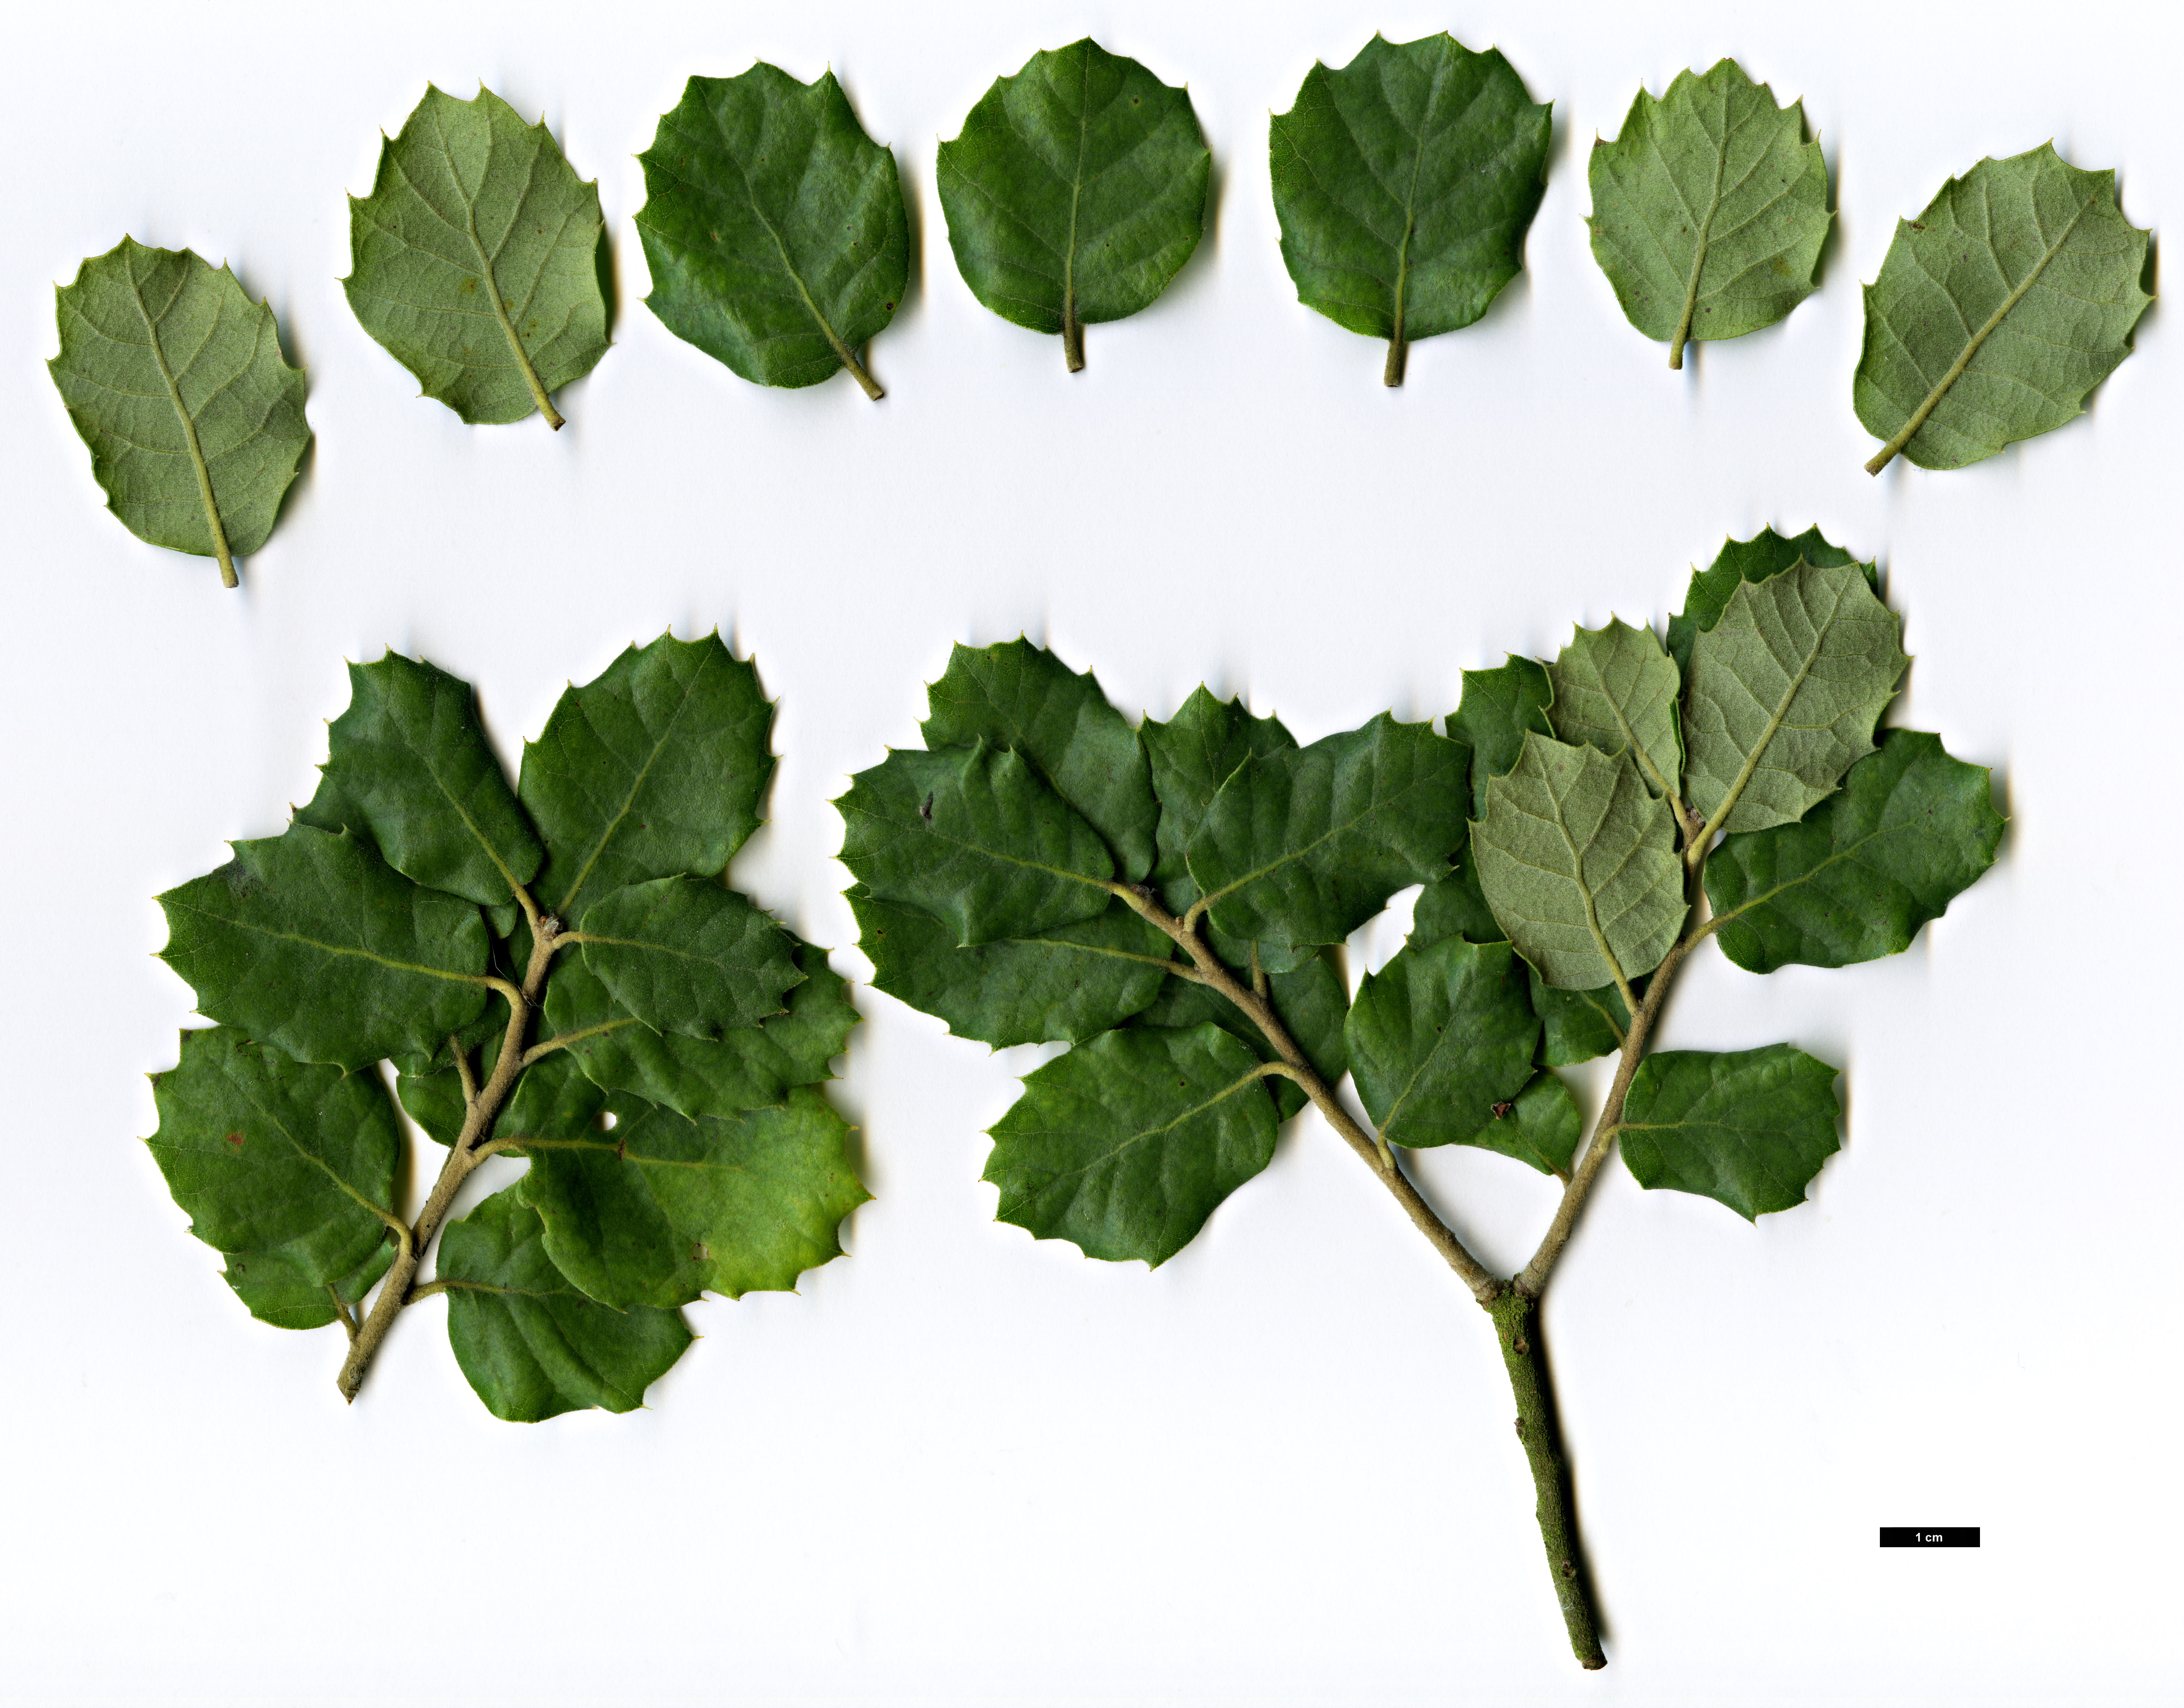 High resolution image: Family: Fagaceae - Genus: Quercus - Taxon: ×mixta (Q.rotundifolia × Q.suber)